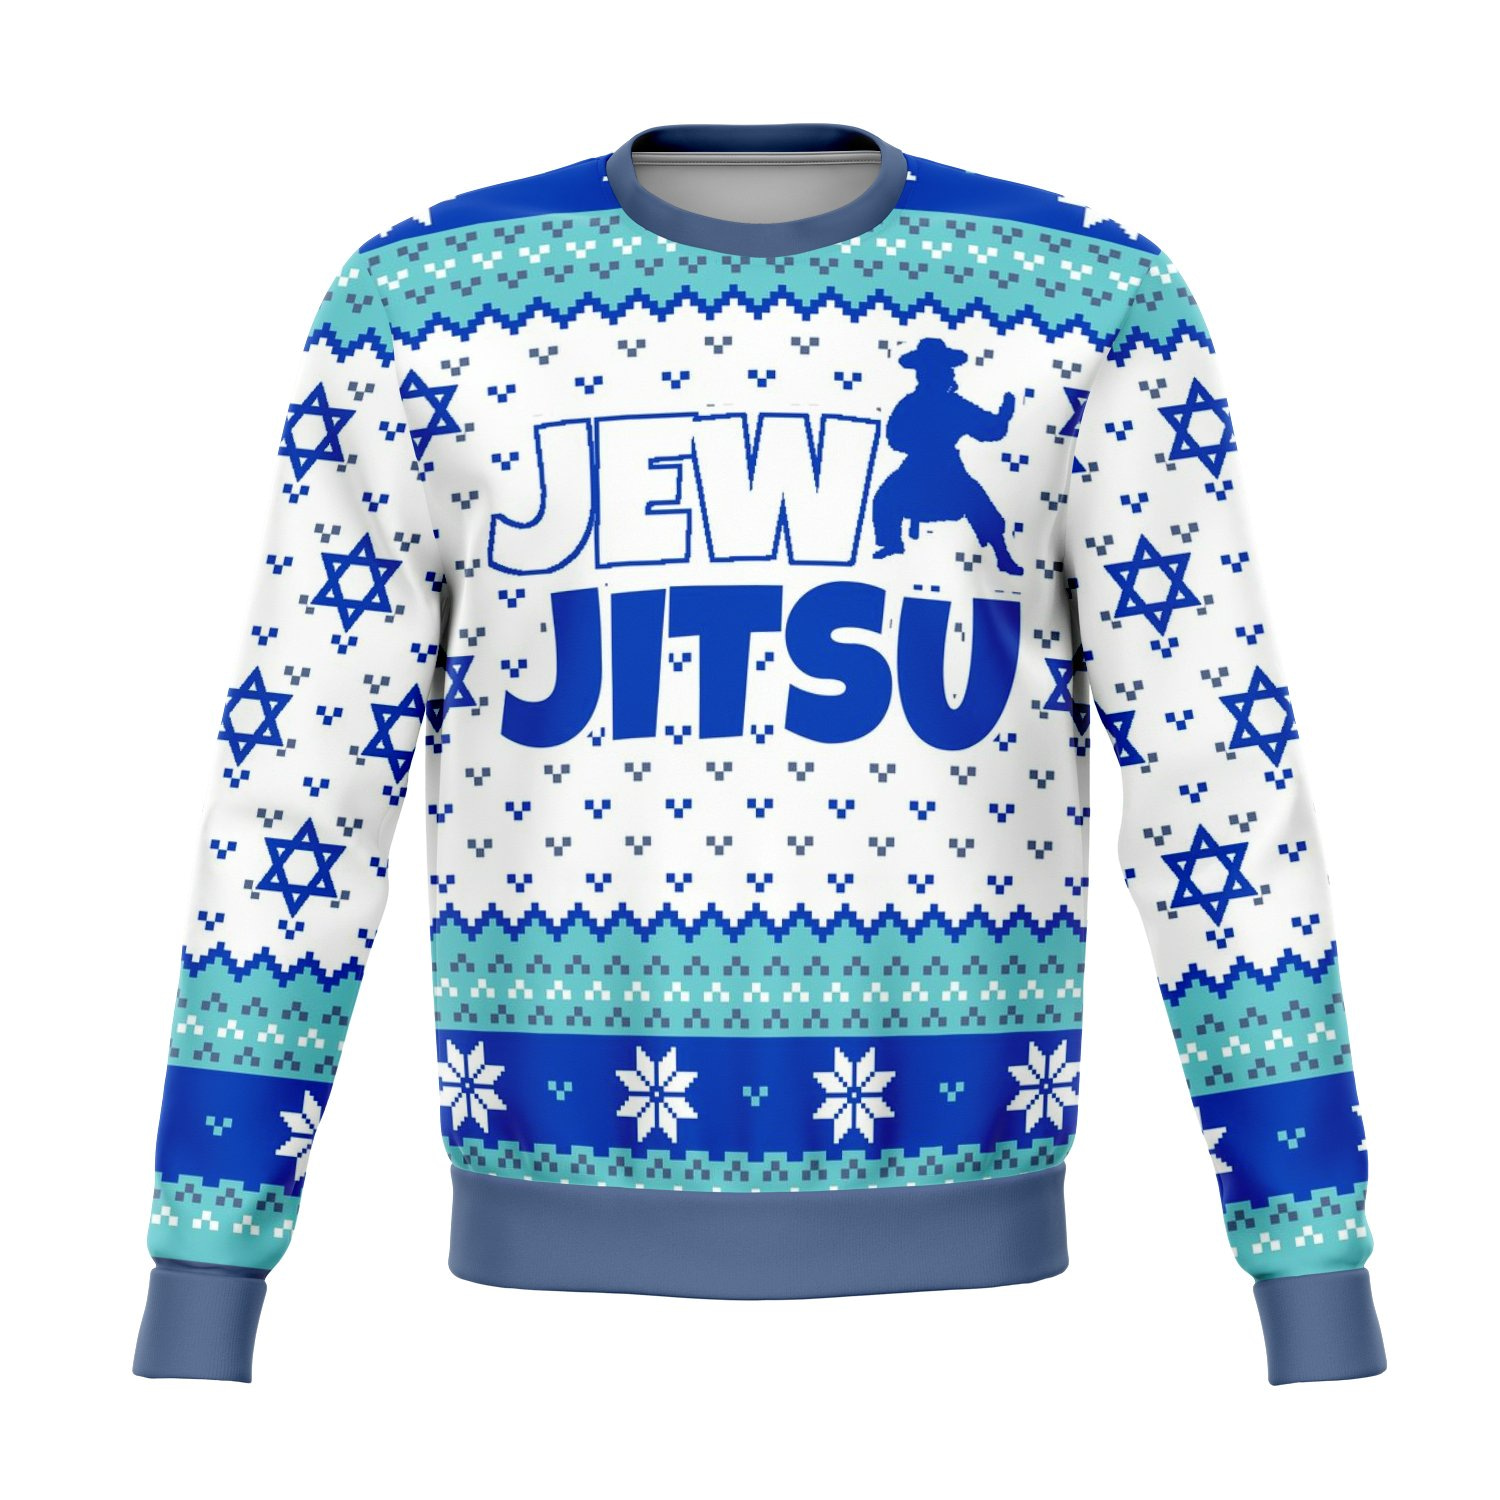 Jewjitsu Ugly Sweater